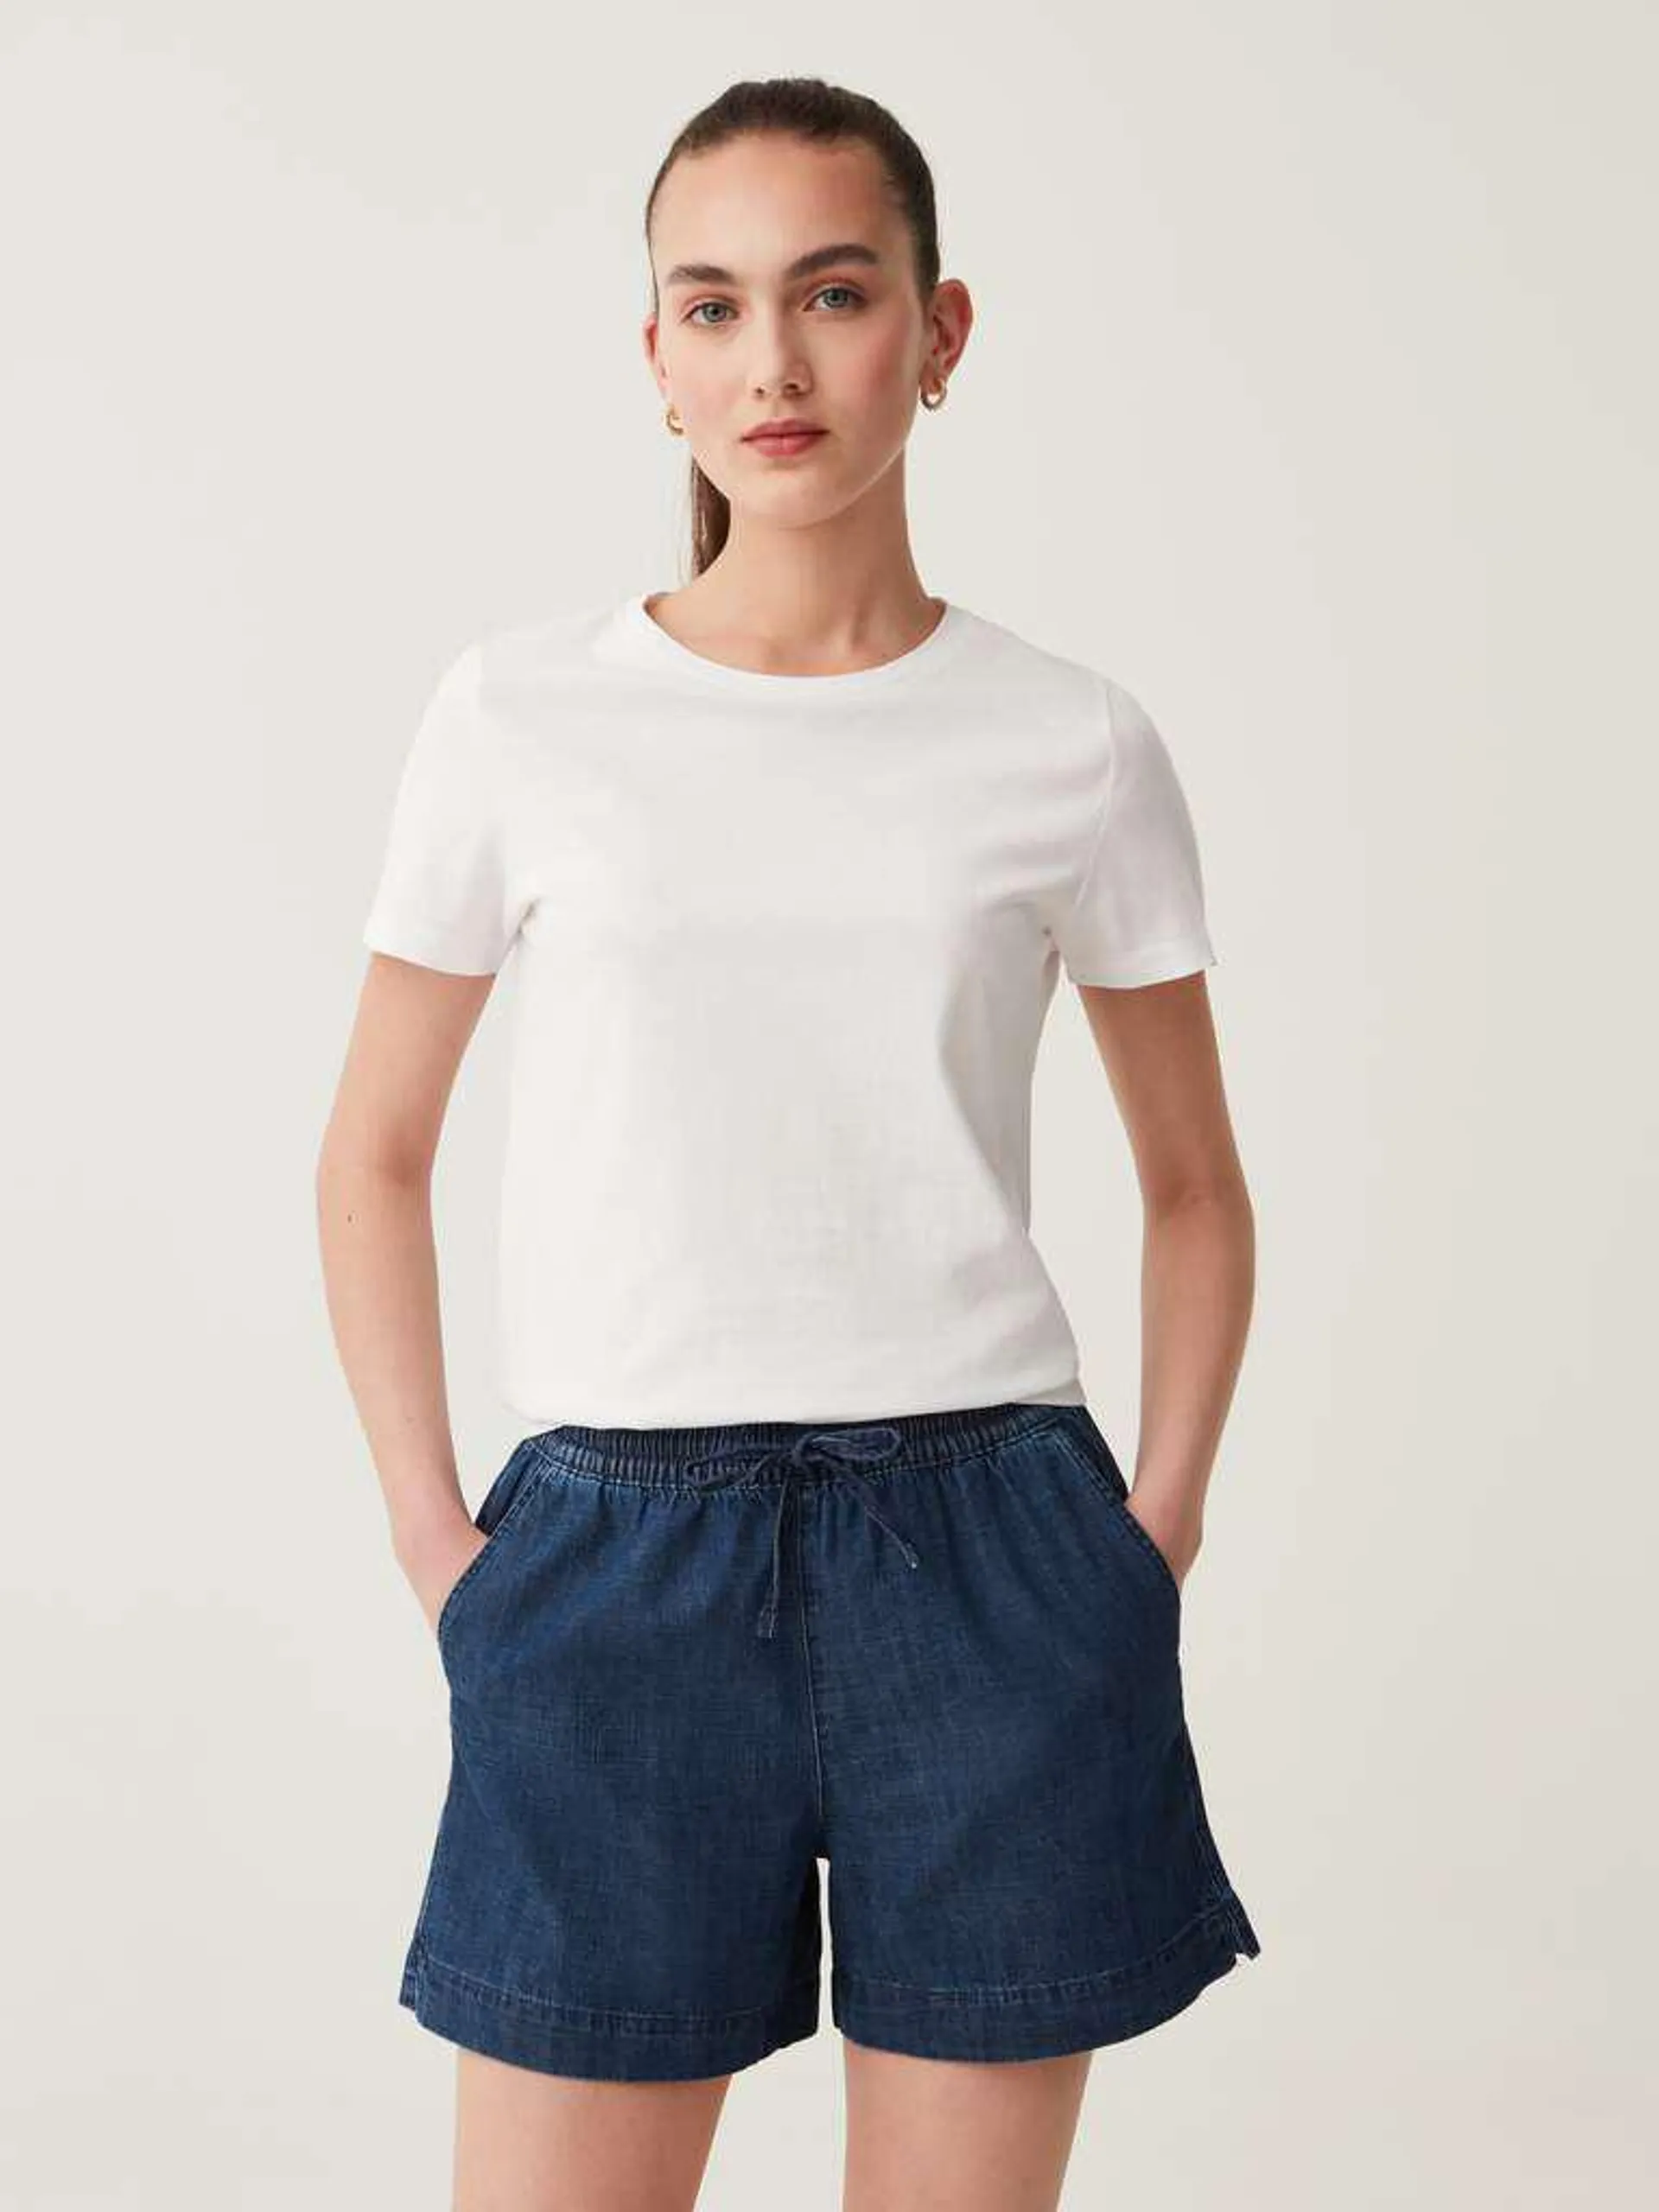 Medium Wash Denim shorts with drawstring